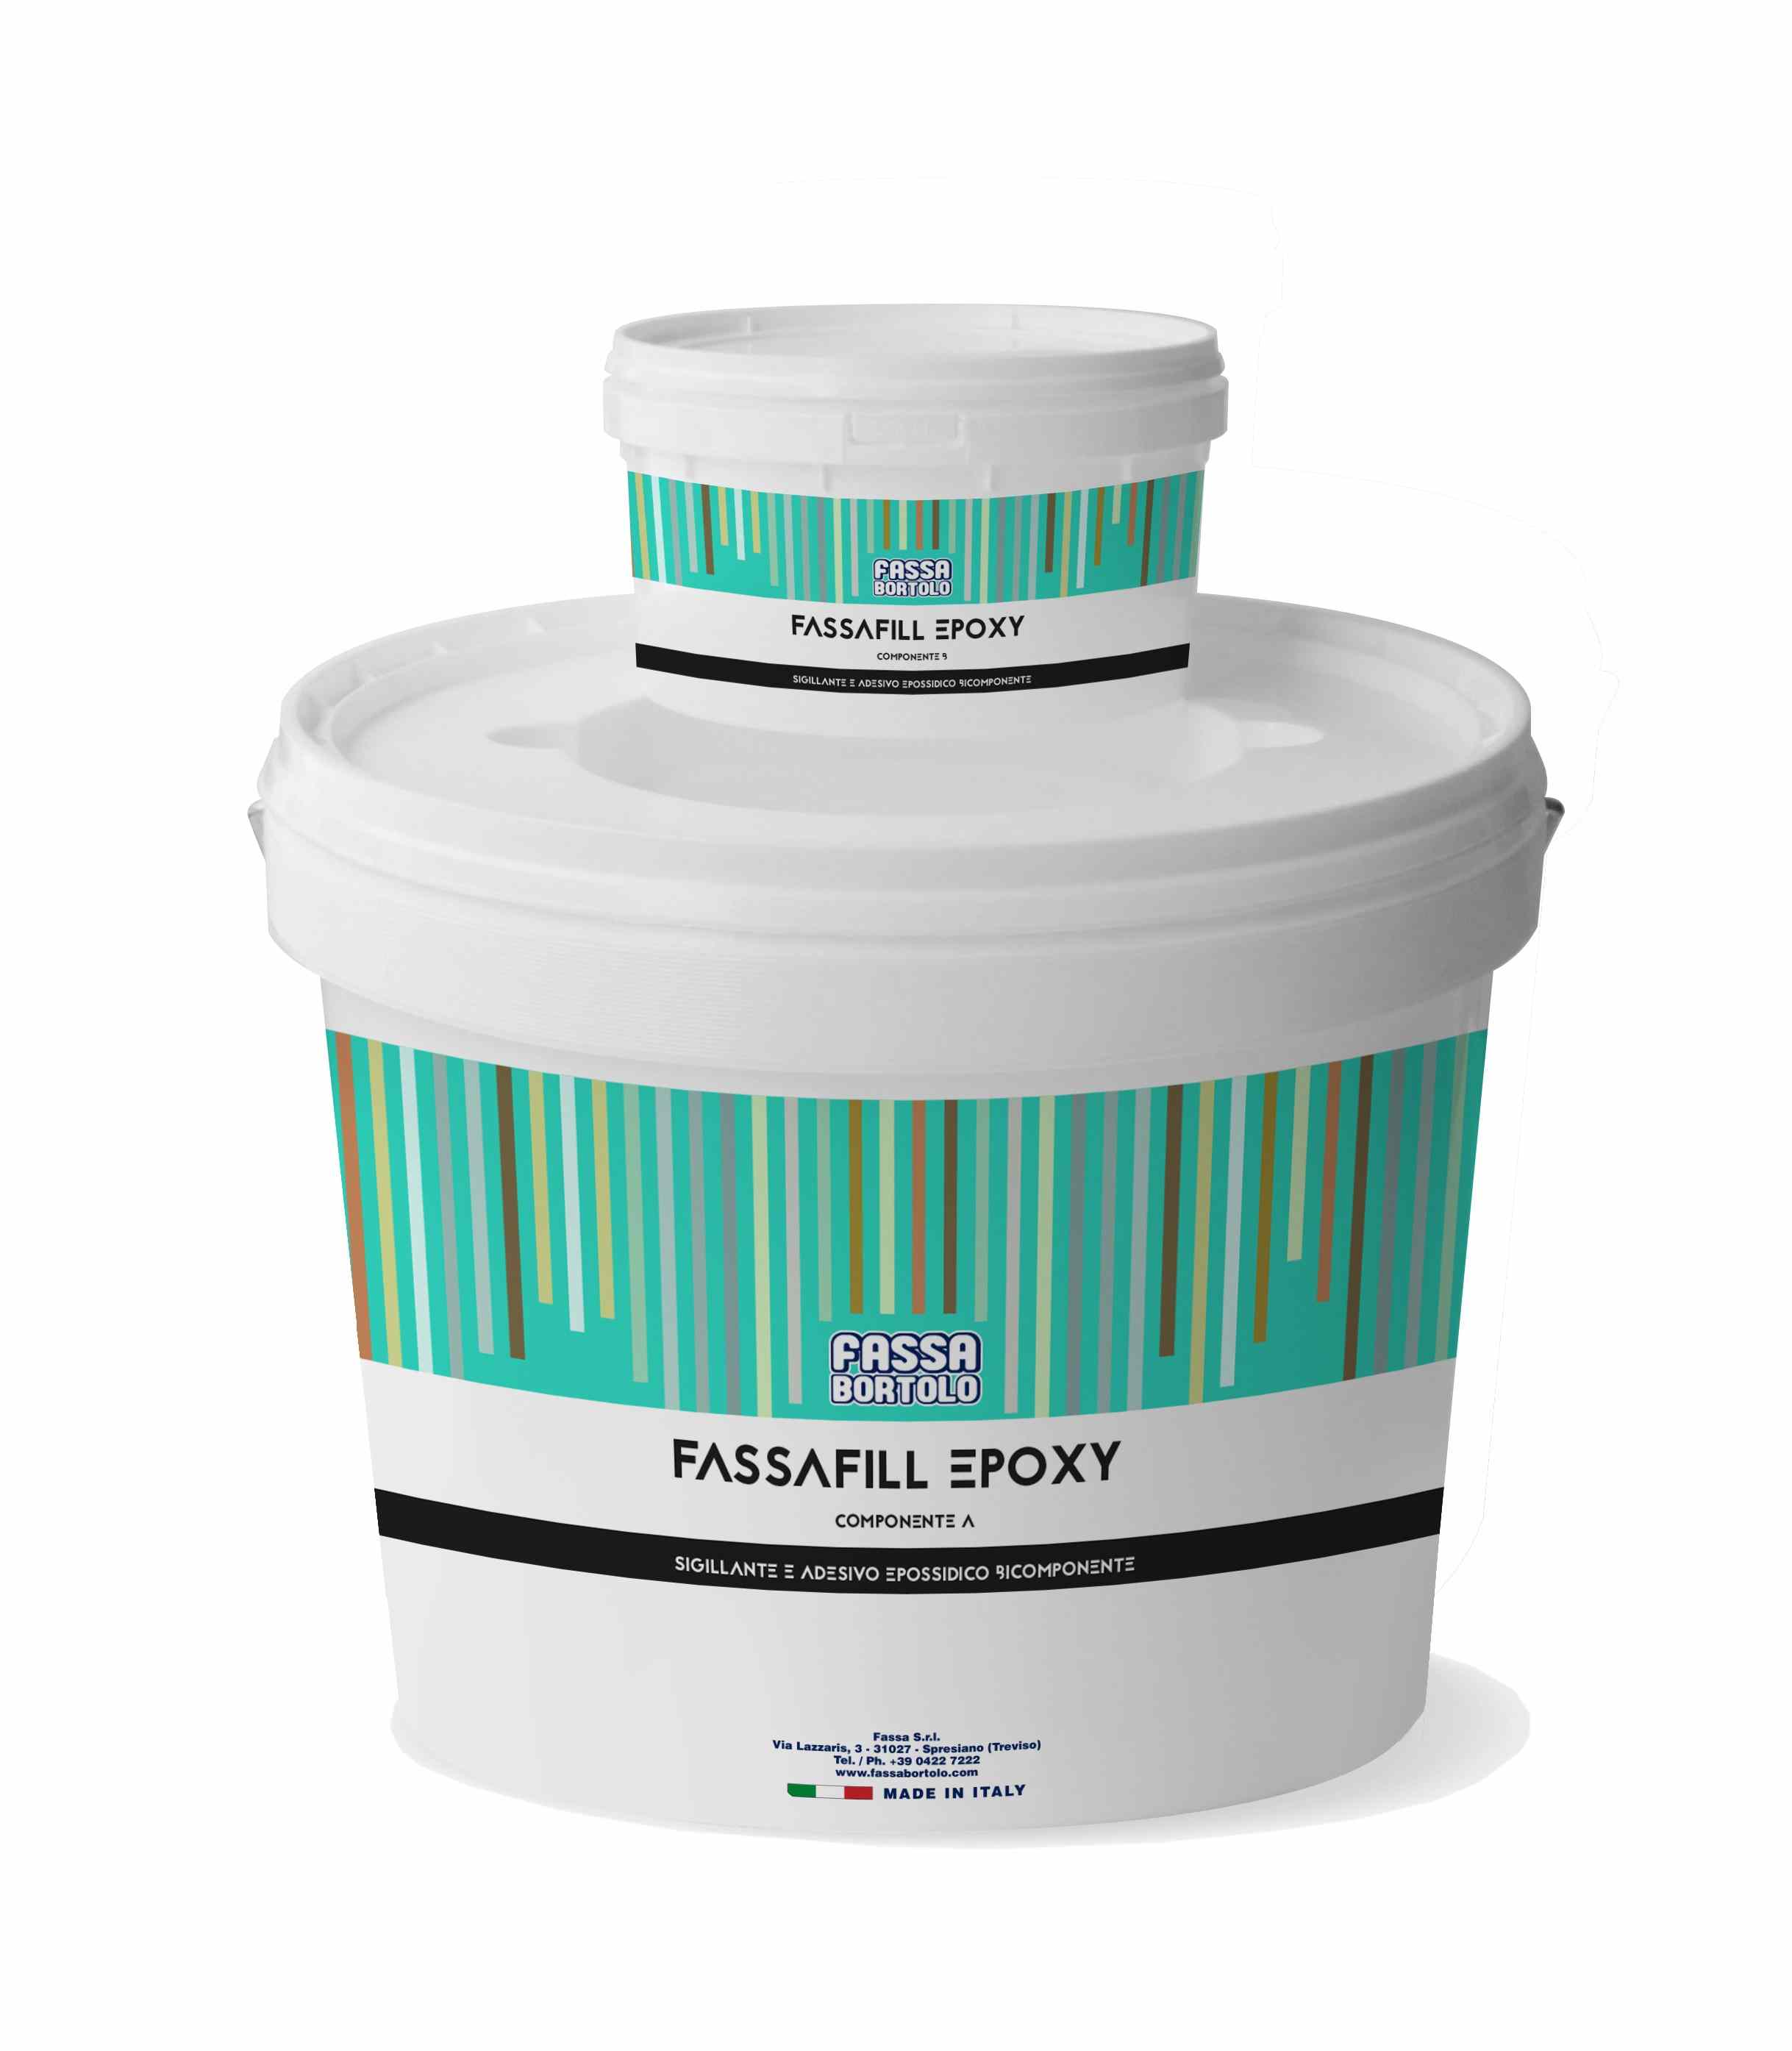 FASSAFILL EPOXY: Sigillante decorativo e adesivo epossidico antiacido colorato bicomponente, per fughe da 1 a 10 mm